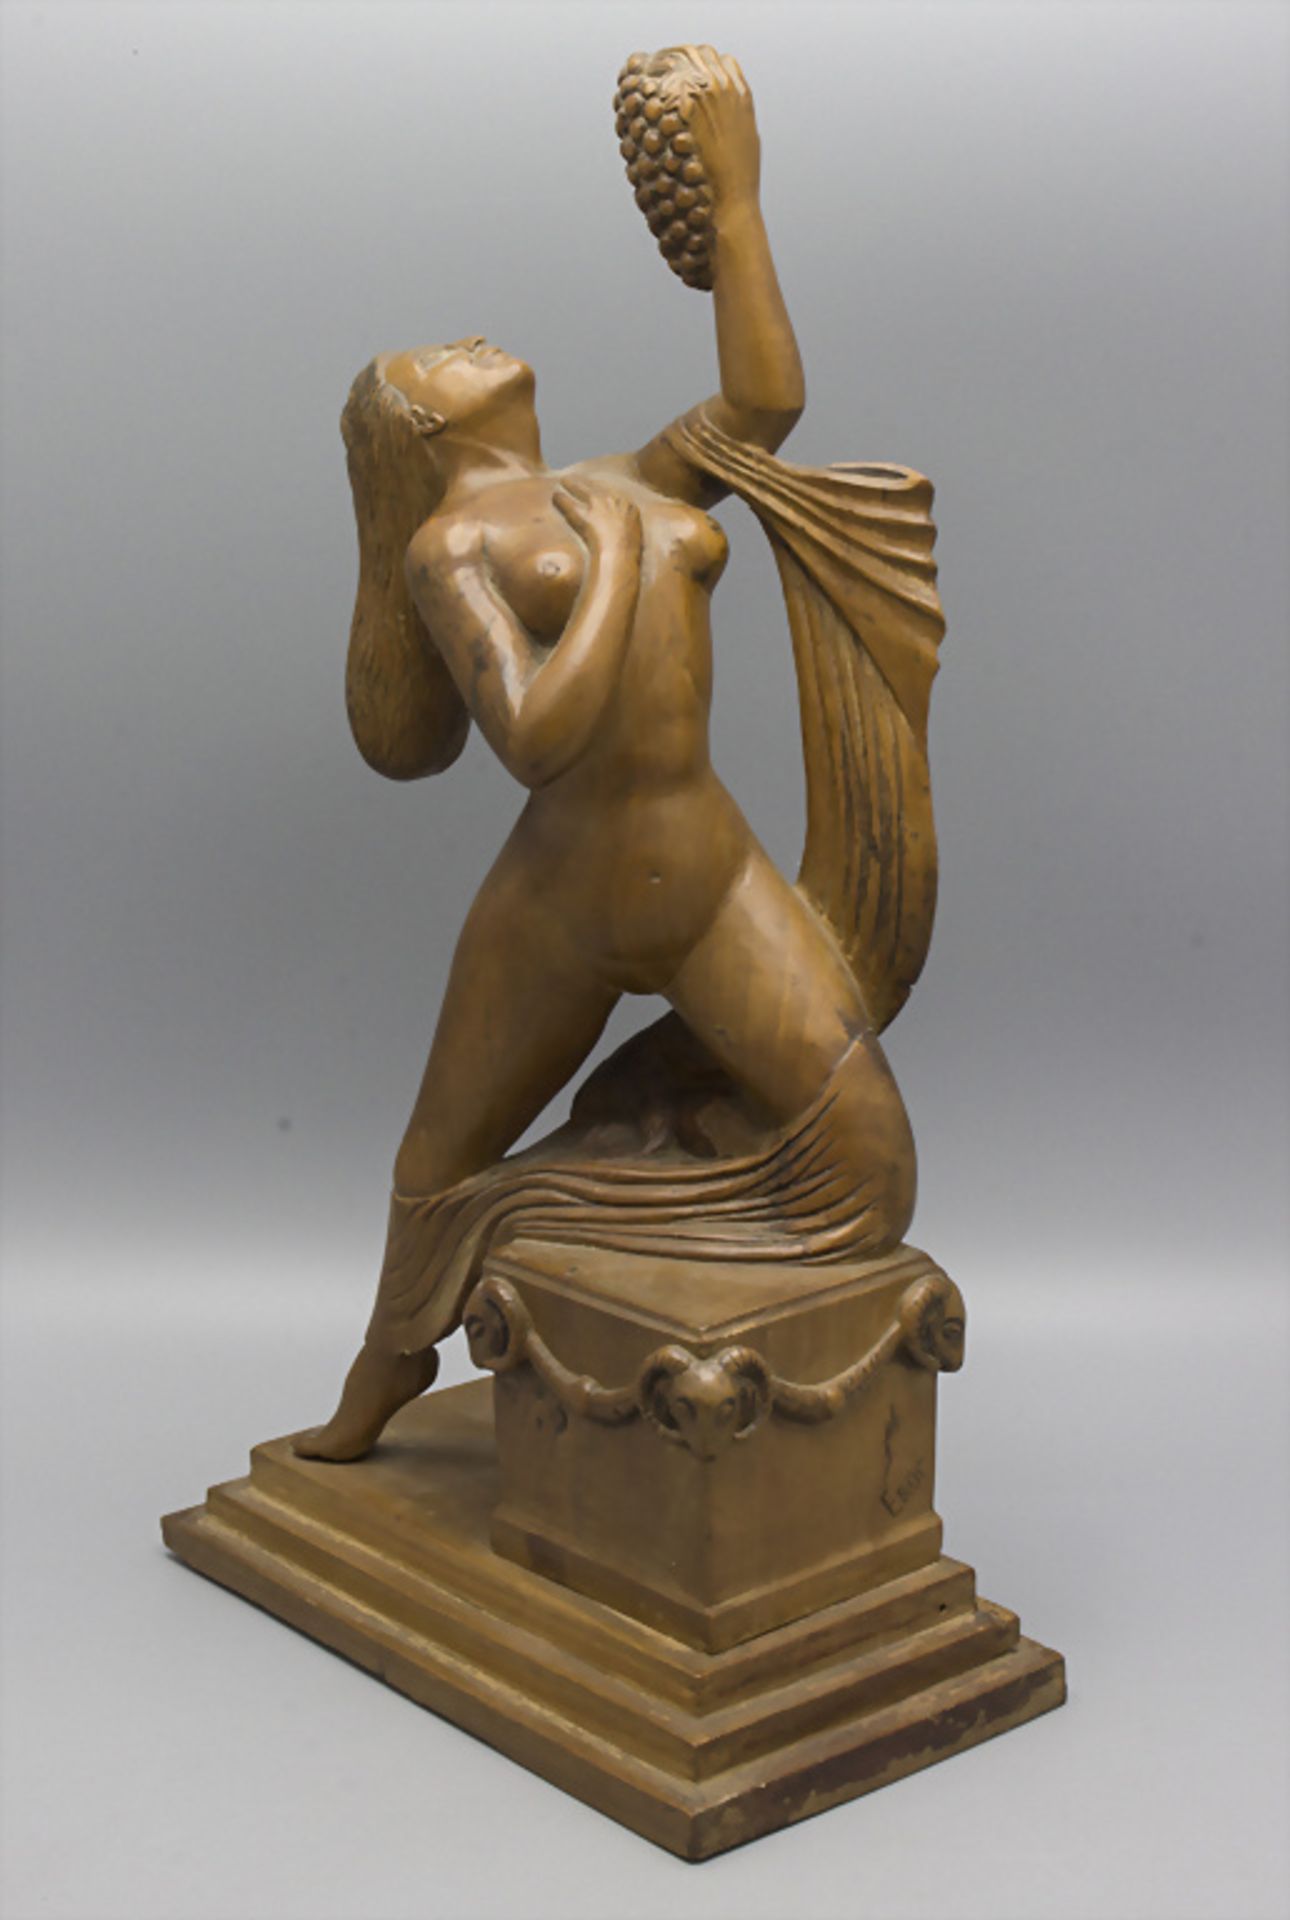 Holzskulptur 'weiblicher Akt mit Trauben' / A wooden scultpture of a female nude with grapes, ... - Bild 2 aus 5